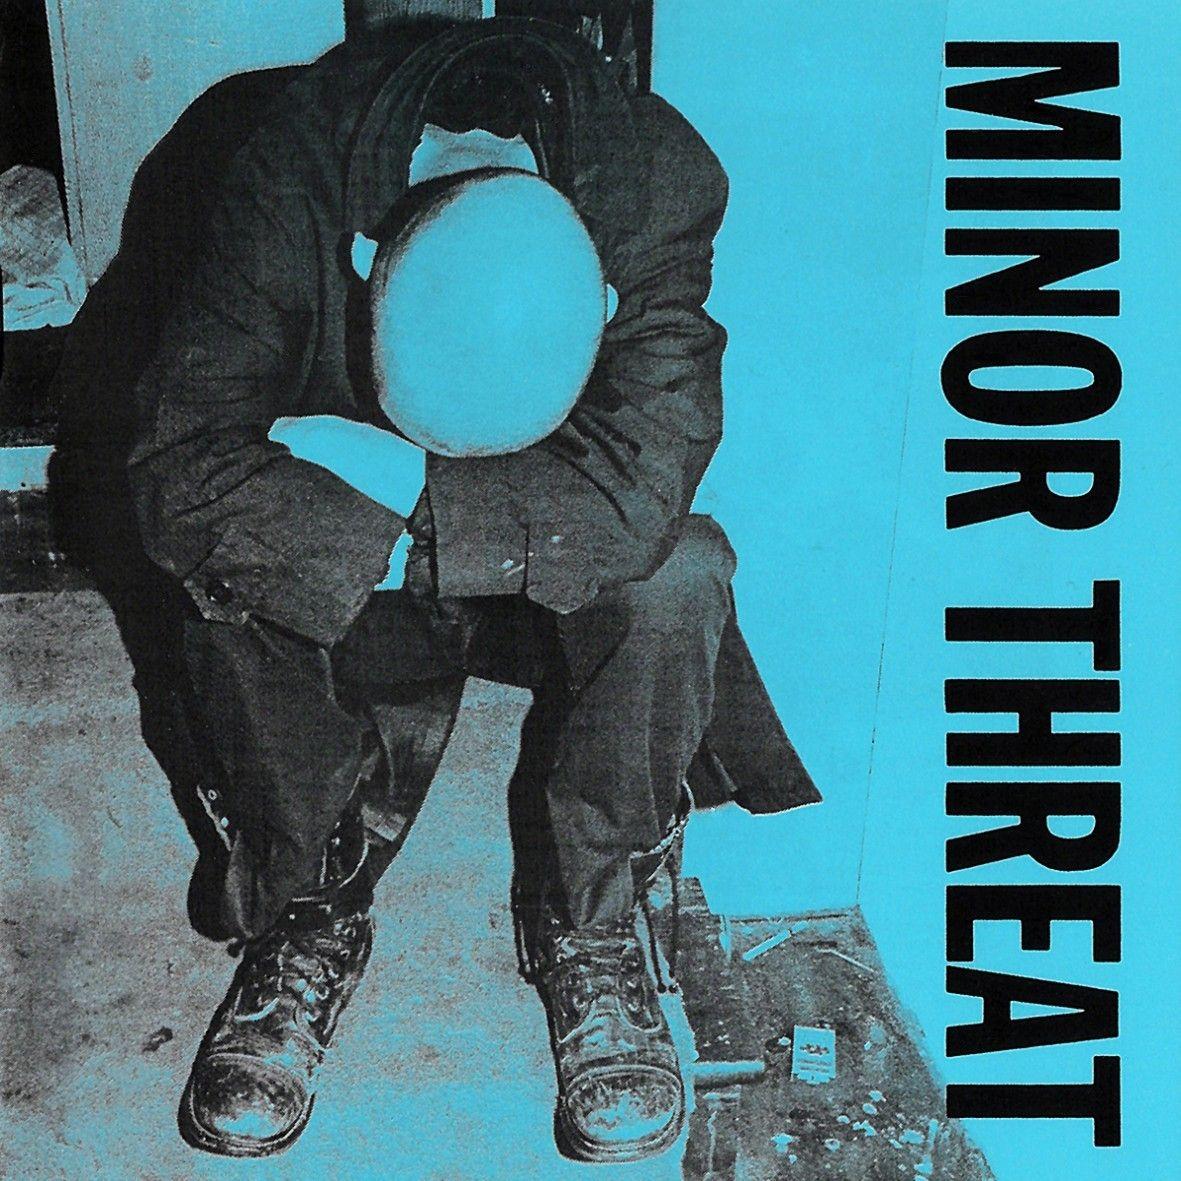 Album Covers / Minor Threat. The Album Covers. Punk rock, Minor